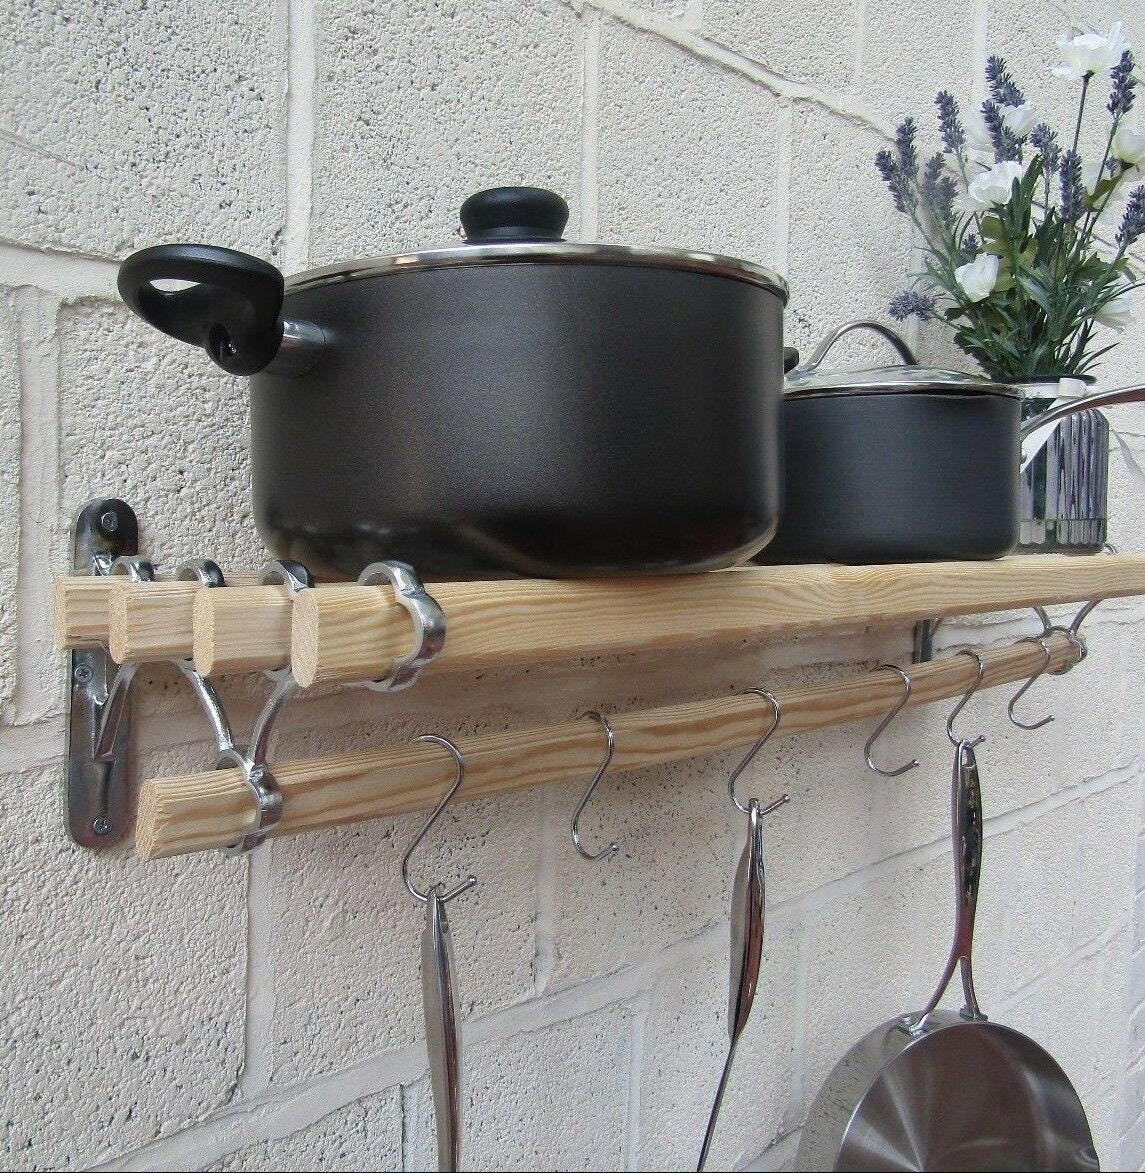 chrome on iron cuisine de campagne traditionnelle étagère pot pan rack support cintre avec fonte se termine vintage rustique cottage ferme rail